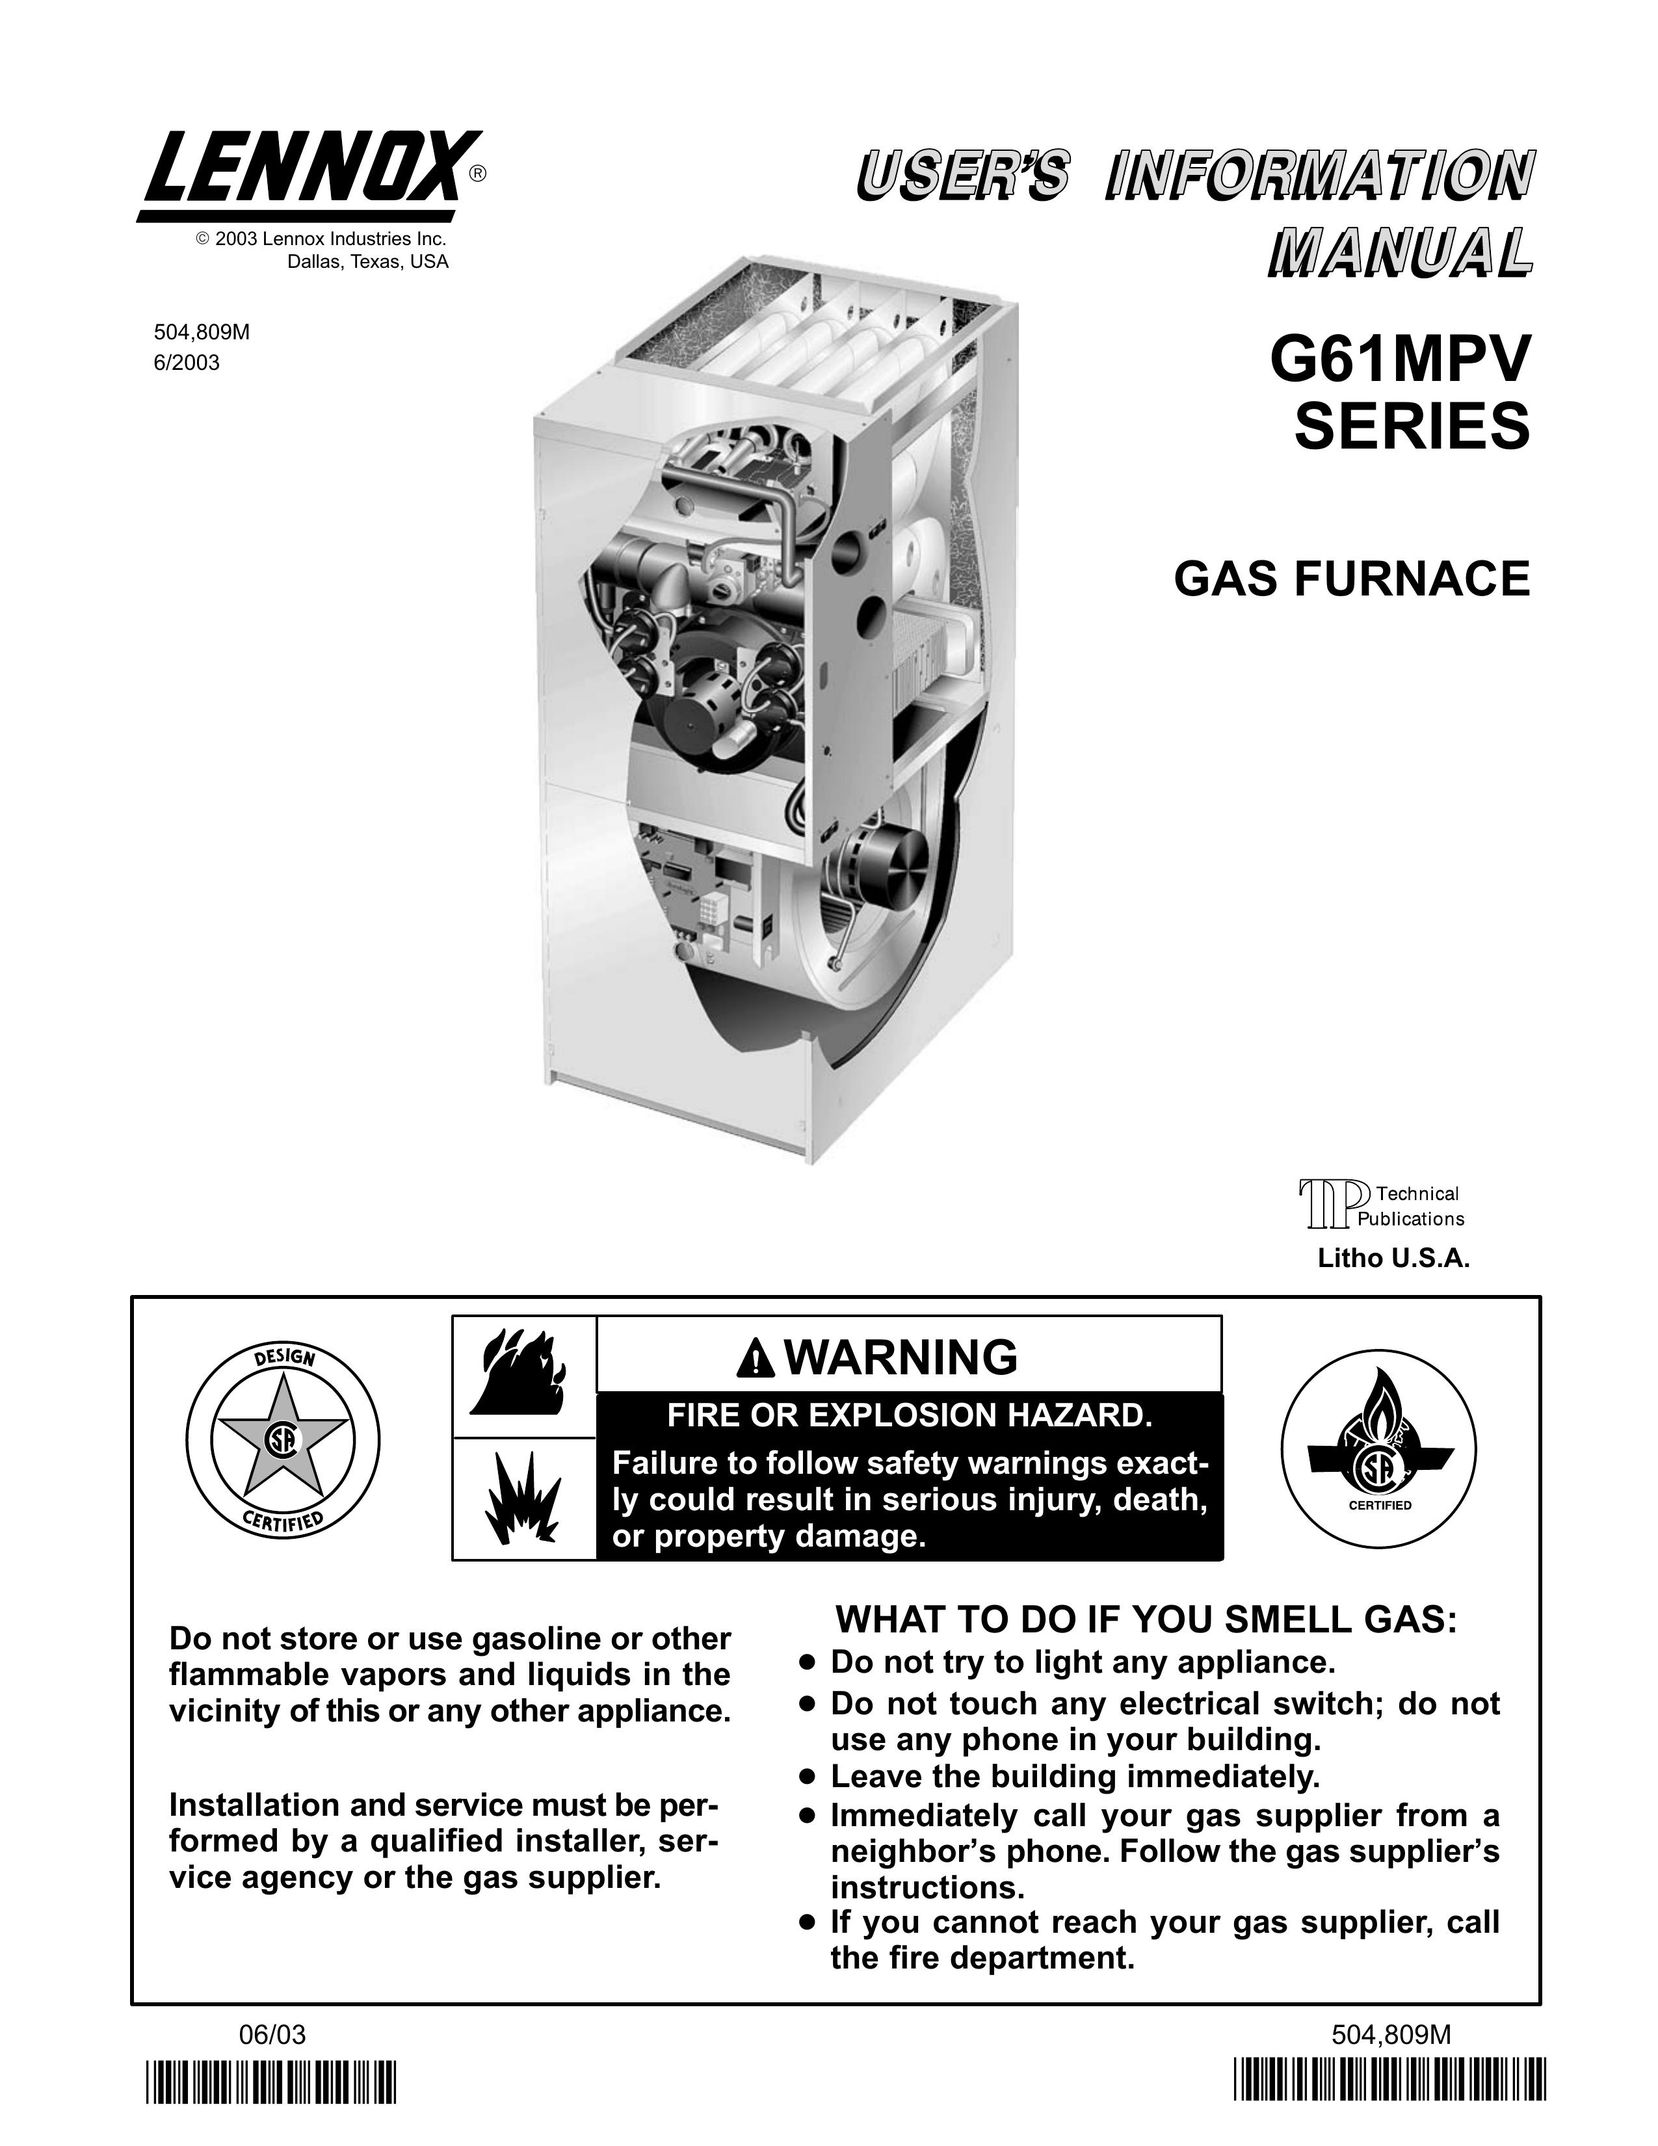 Lenoxx Electronics P504809M Furnace User Manual